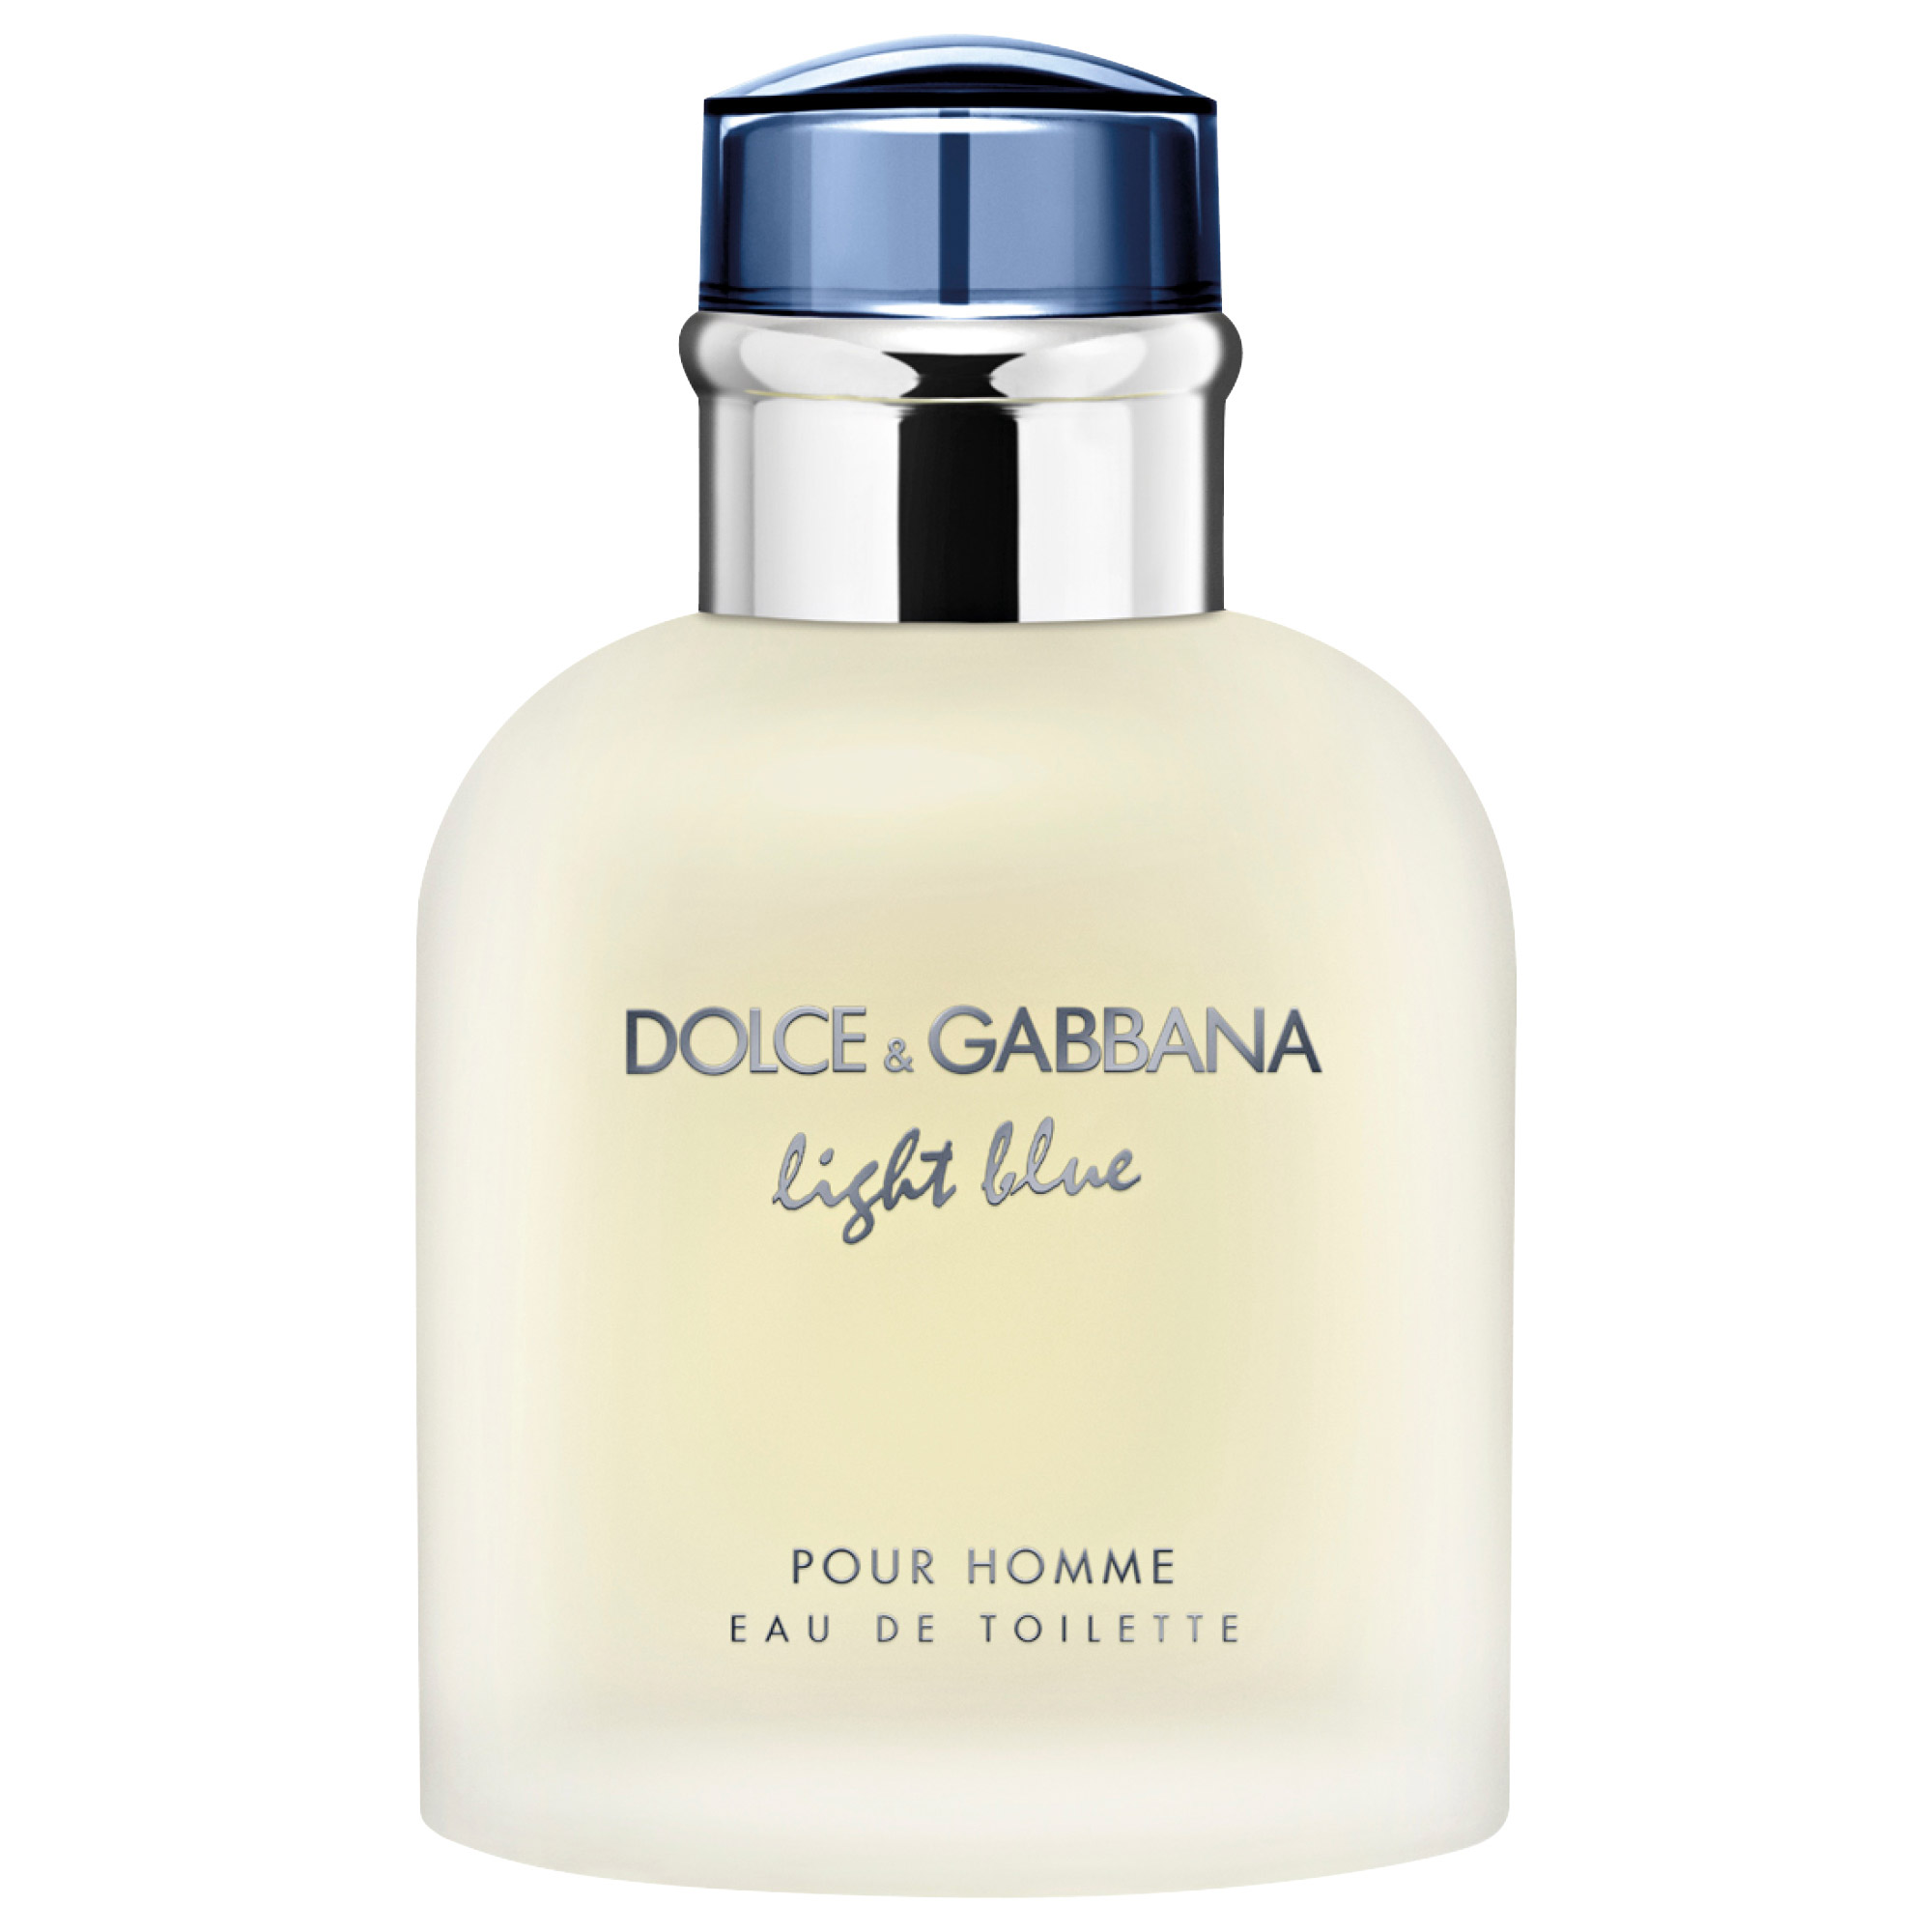 DOLCE&GABBANA LIGHT BLUE HOMME EAU DE TOILETTE